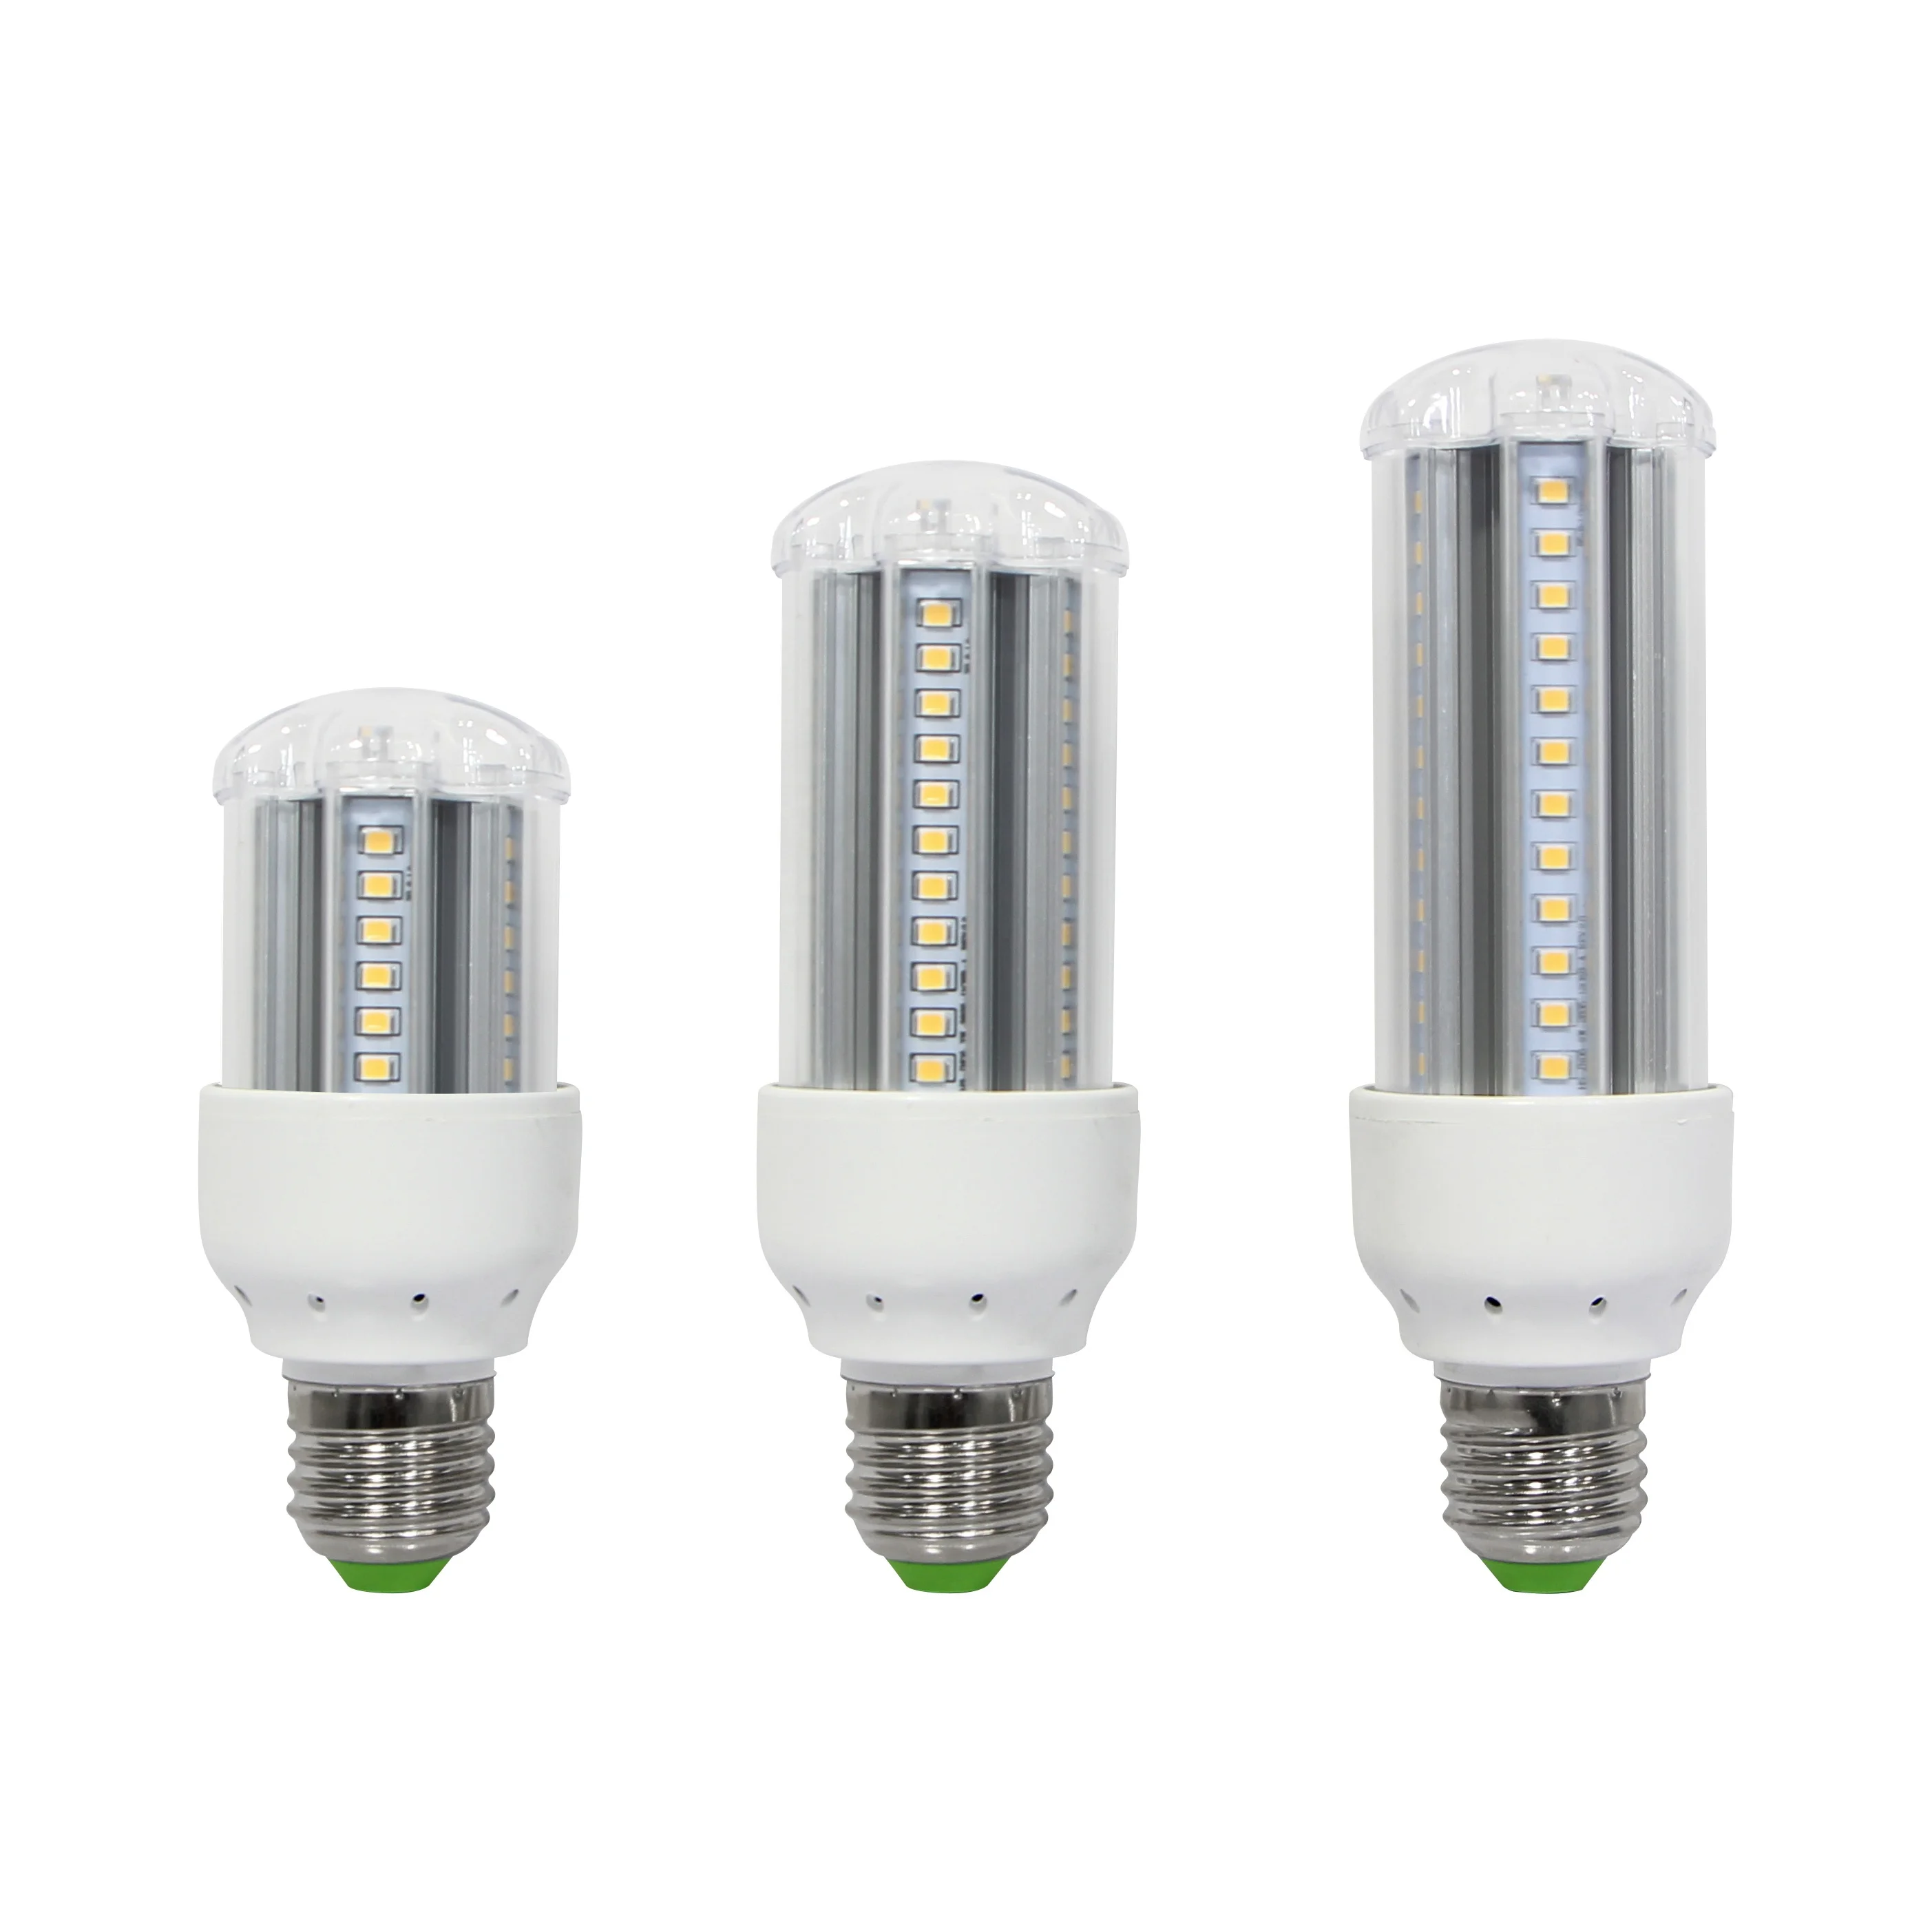 Dlc/etl E27 G24 Smd 360 Degree 6w 8w 10w 12w Led Corn Light Bulb Mini Led Lighting Bulbs - Buy Led Lamp Bulb,Led Corn Light,E27 Led Corn Product on Alibaba.com